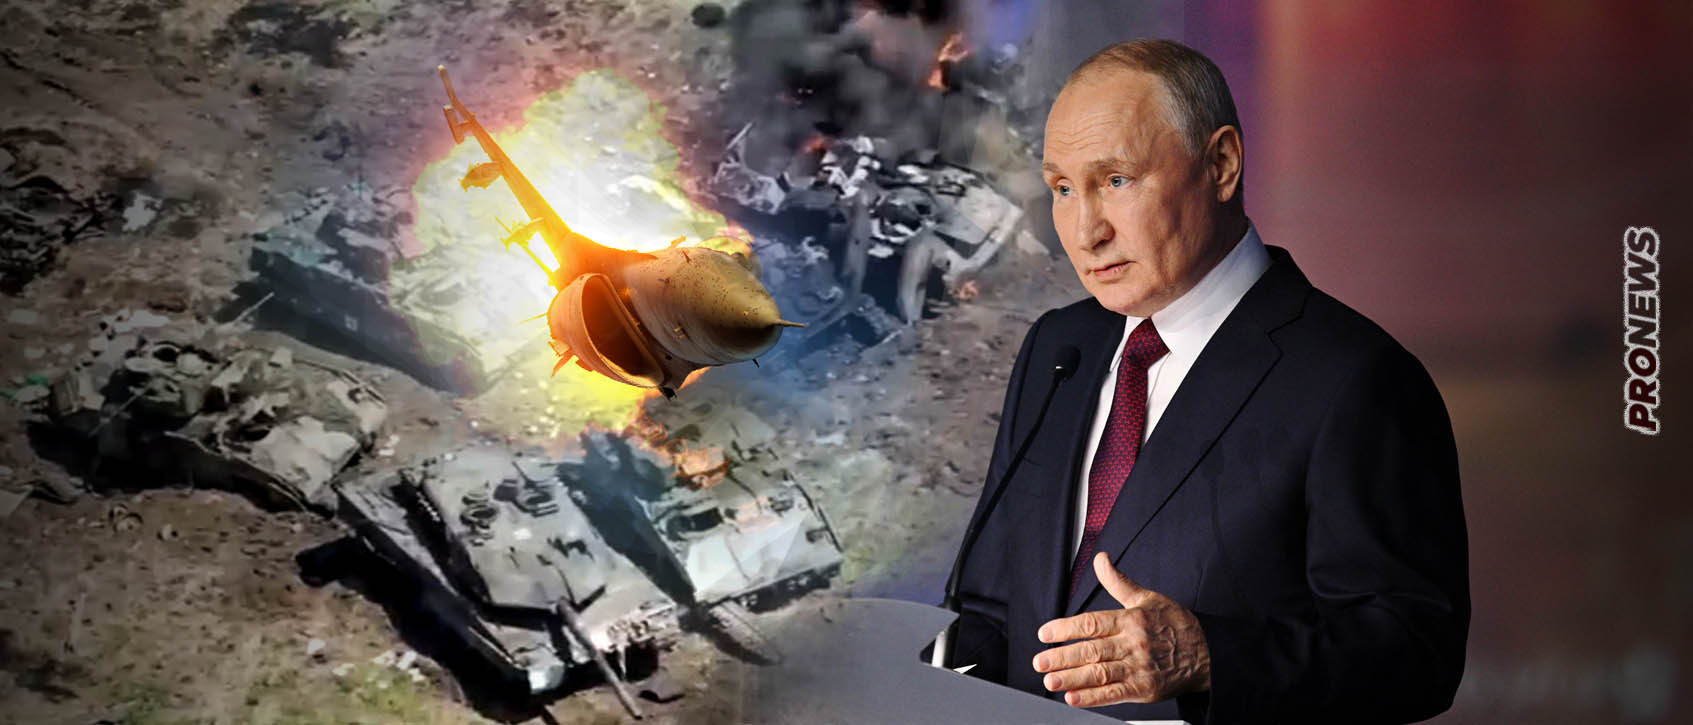 Β.Πούτιν από την Αγία Πετρούπολη: «Όπως καίγονται τα Leopard τώρα στην Ουκρανία έτσι θα συμβεί και με τα F-16»!